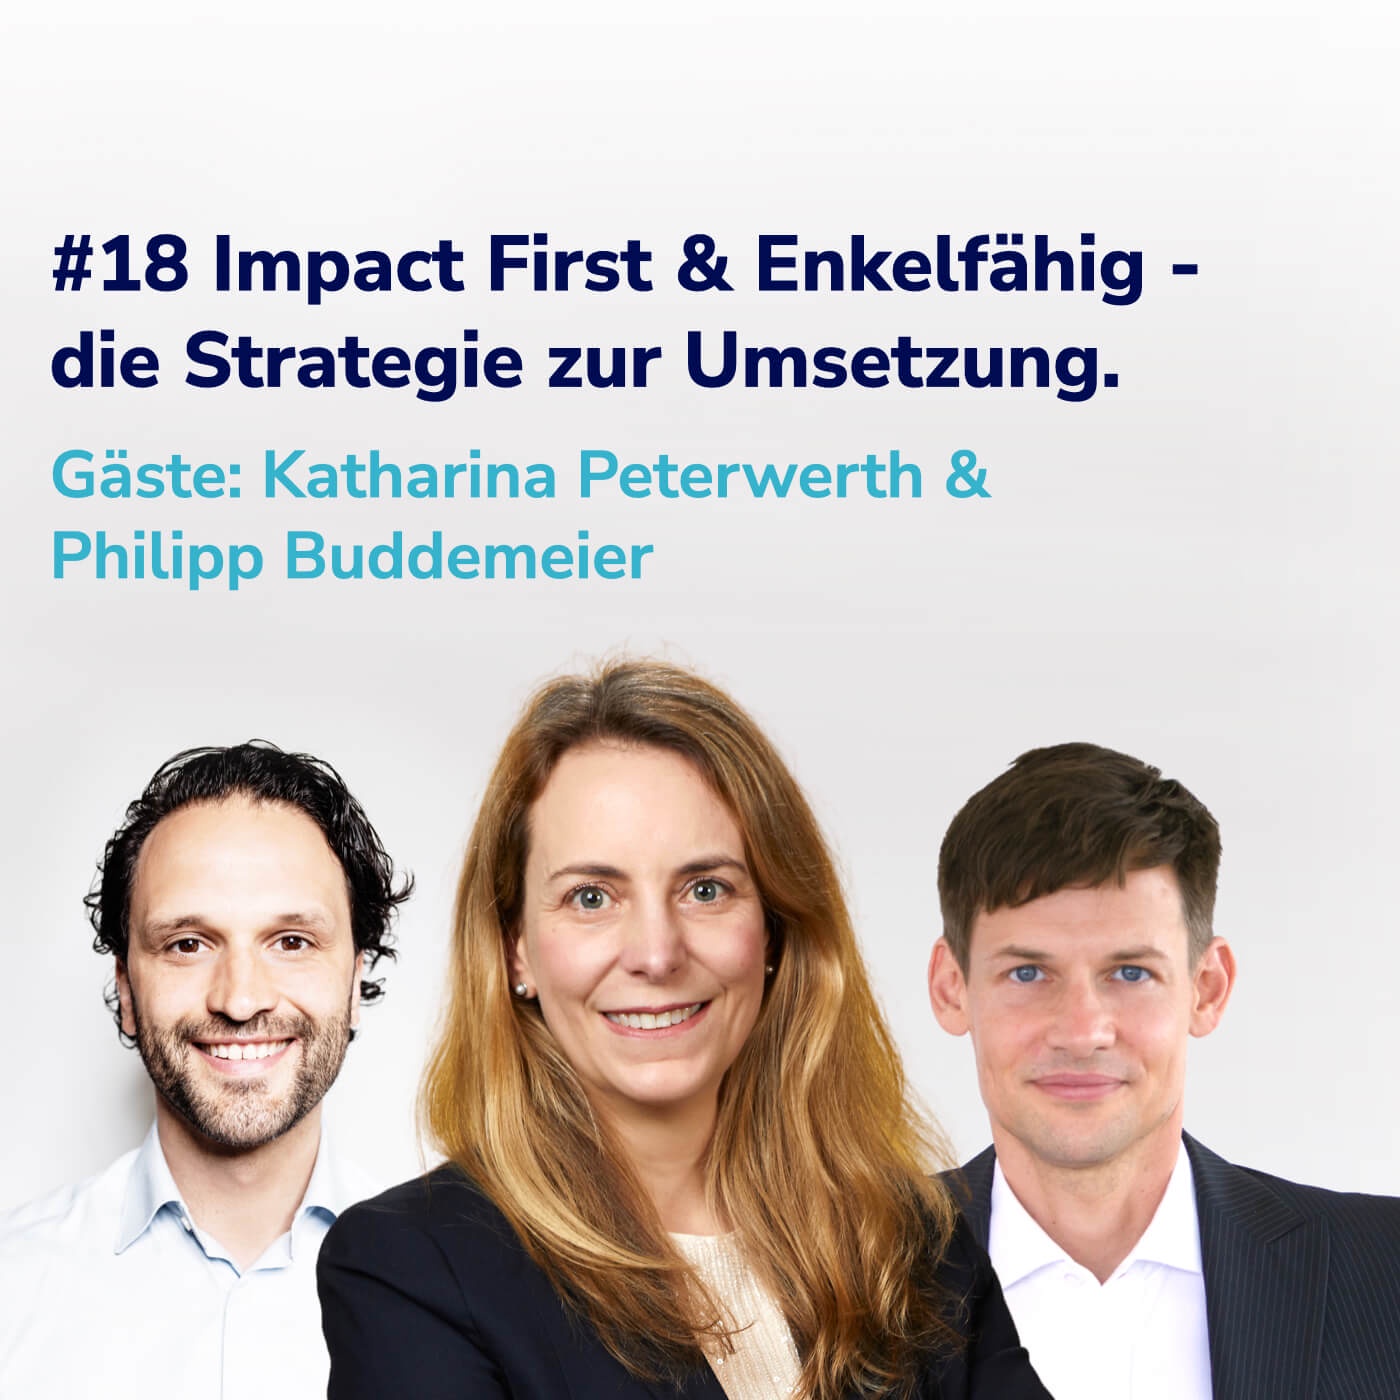 #18 Impact First & Enkelfähig - die Strategie zur Umsetzung I Gäste: Philipp Buddemeier & Katharina Peterwerth